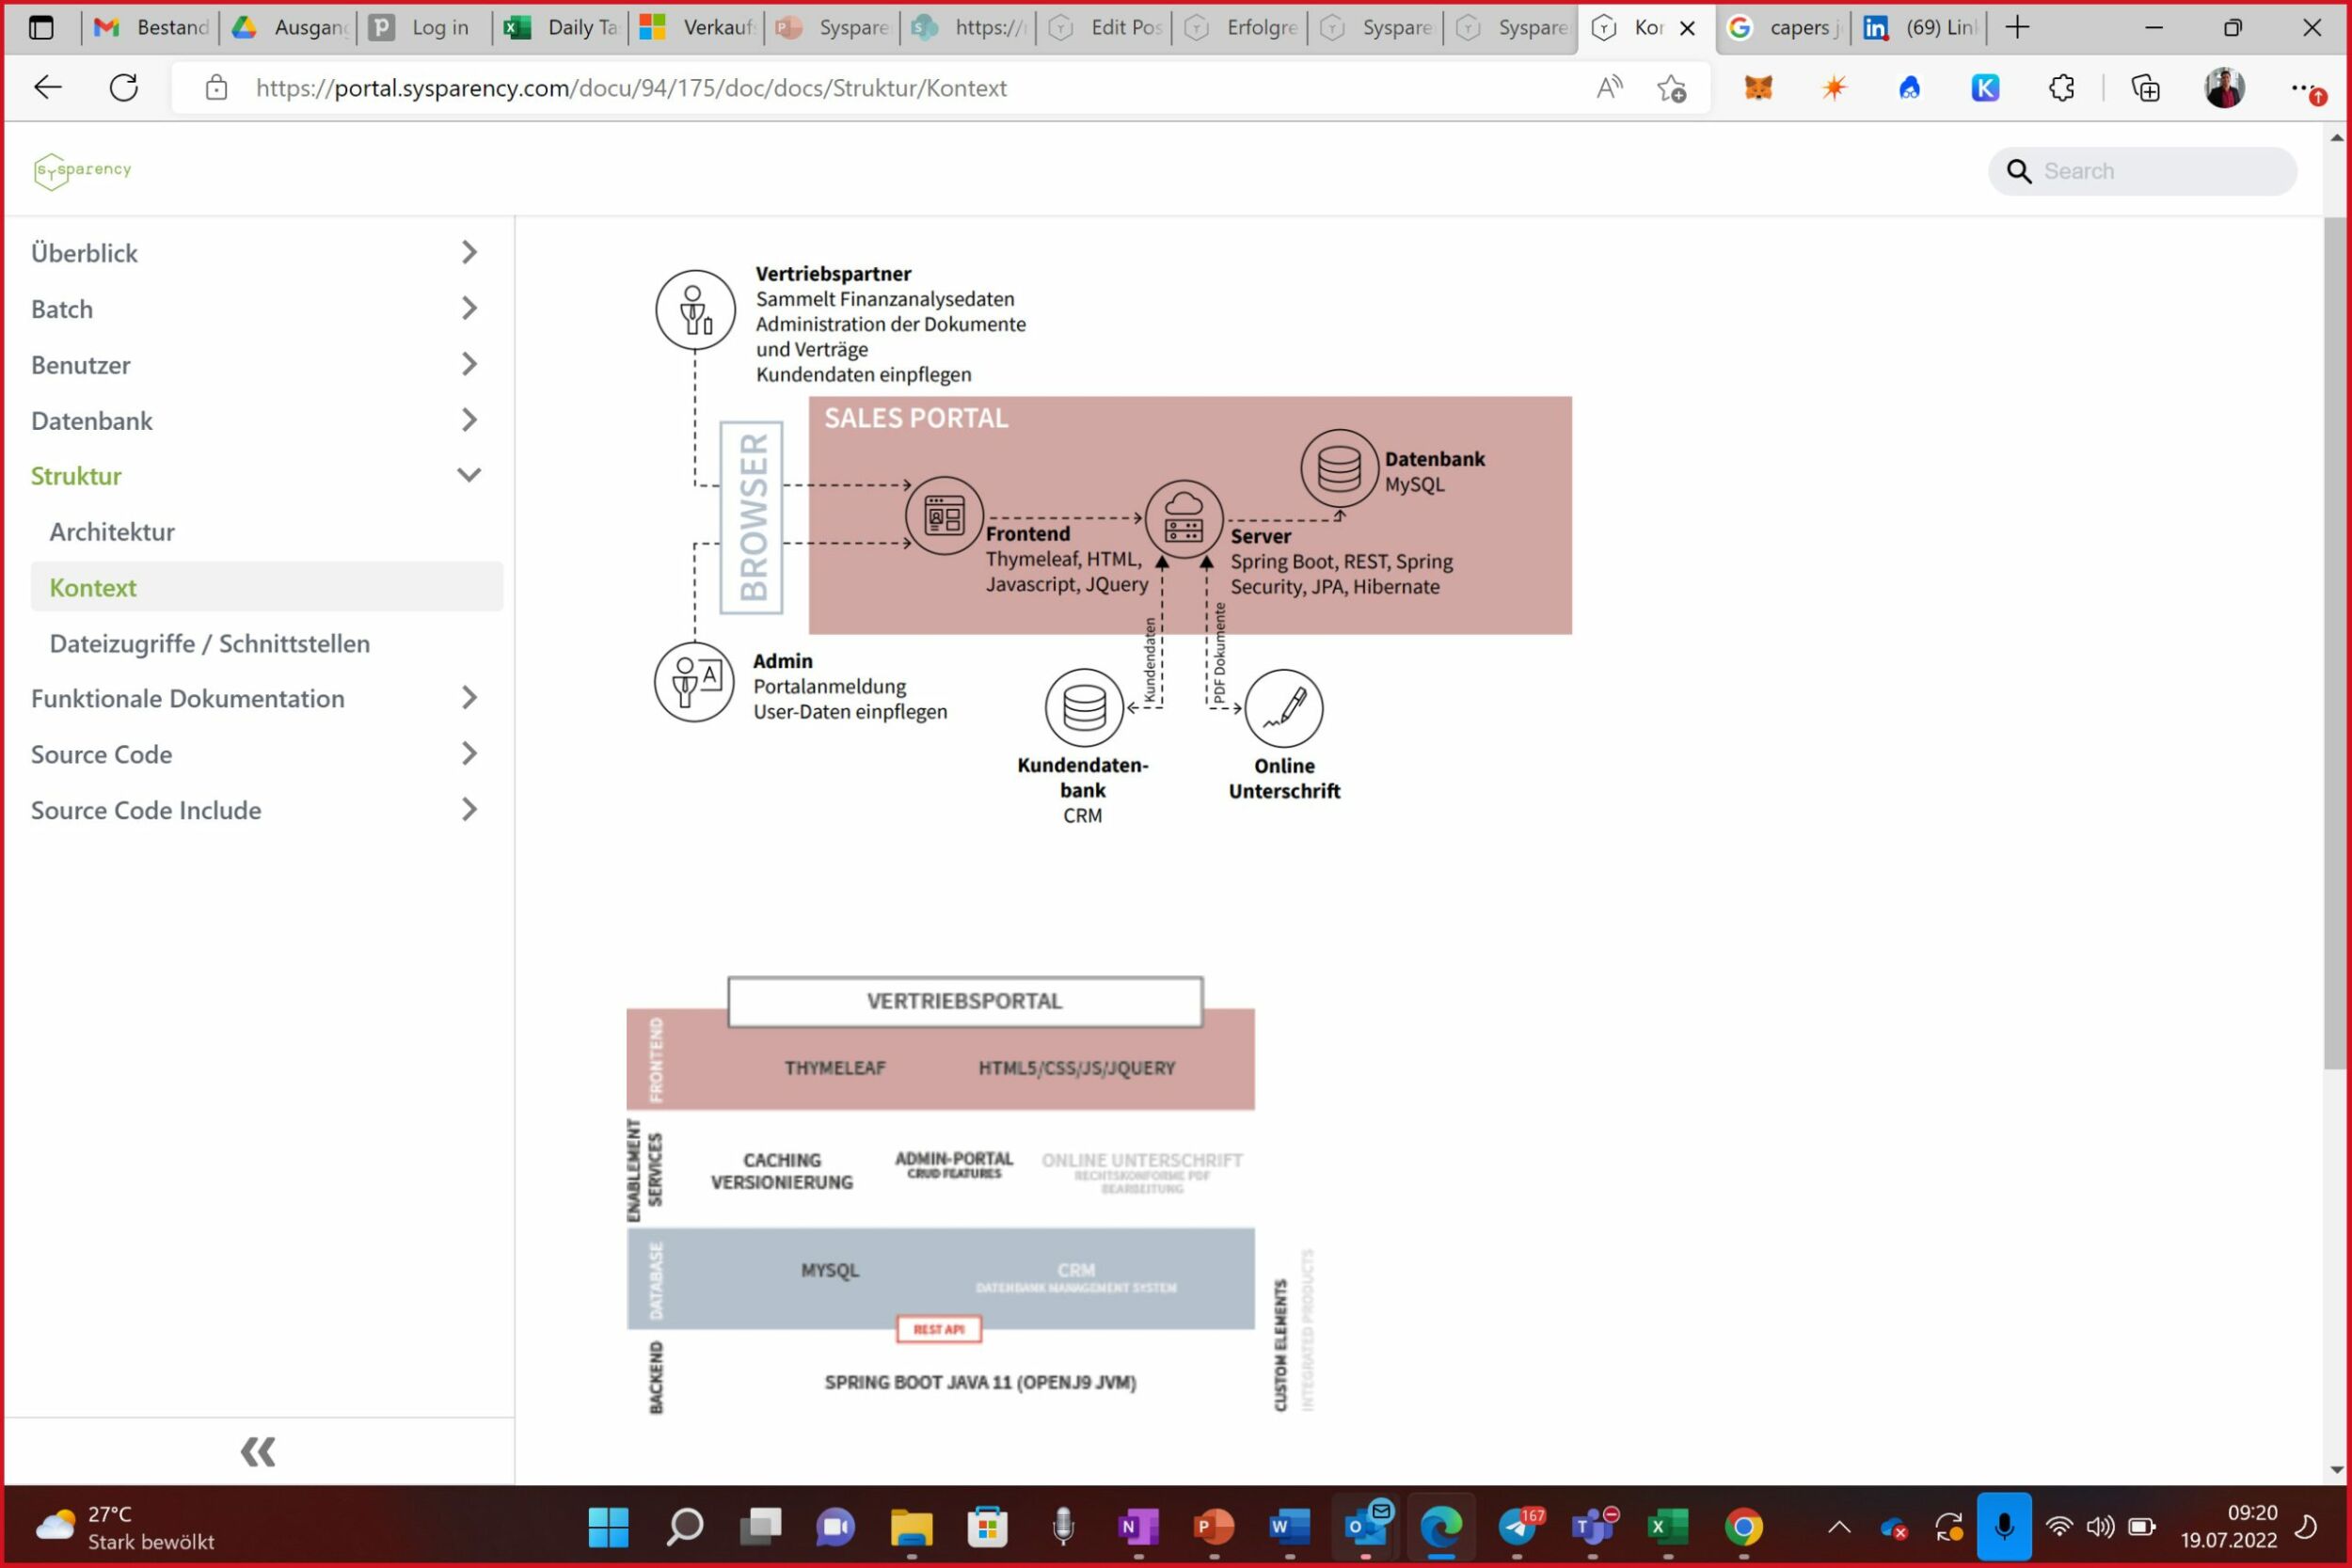 Einbindung von Prozessdesigns in die Dokumentation, um ein besseres Verständnis über die Prozesse zu erhalten. (Bild: Sysparency GmbH)